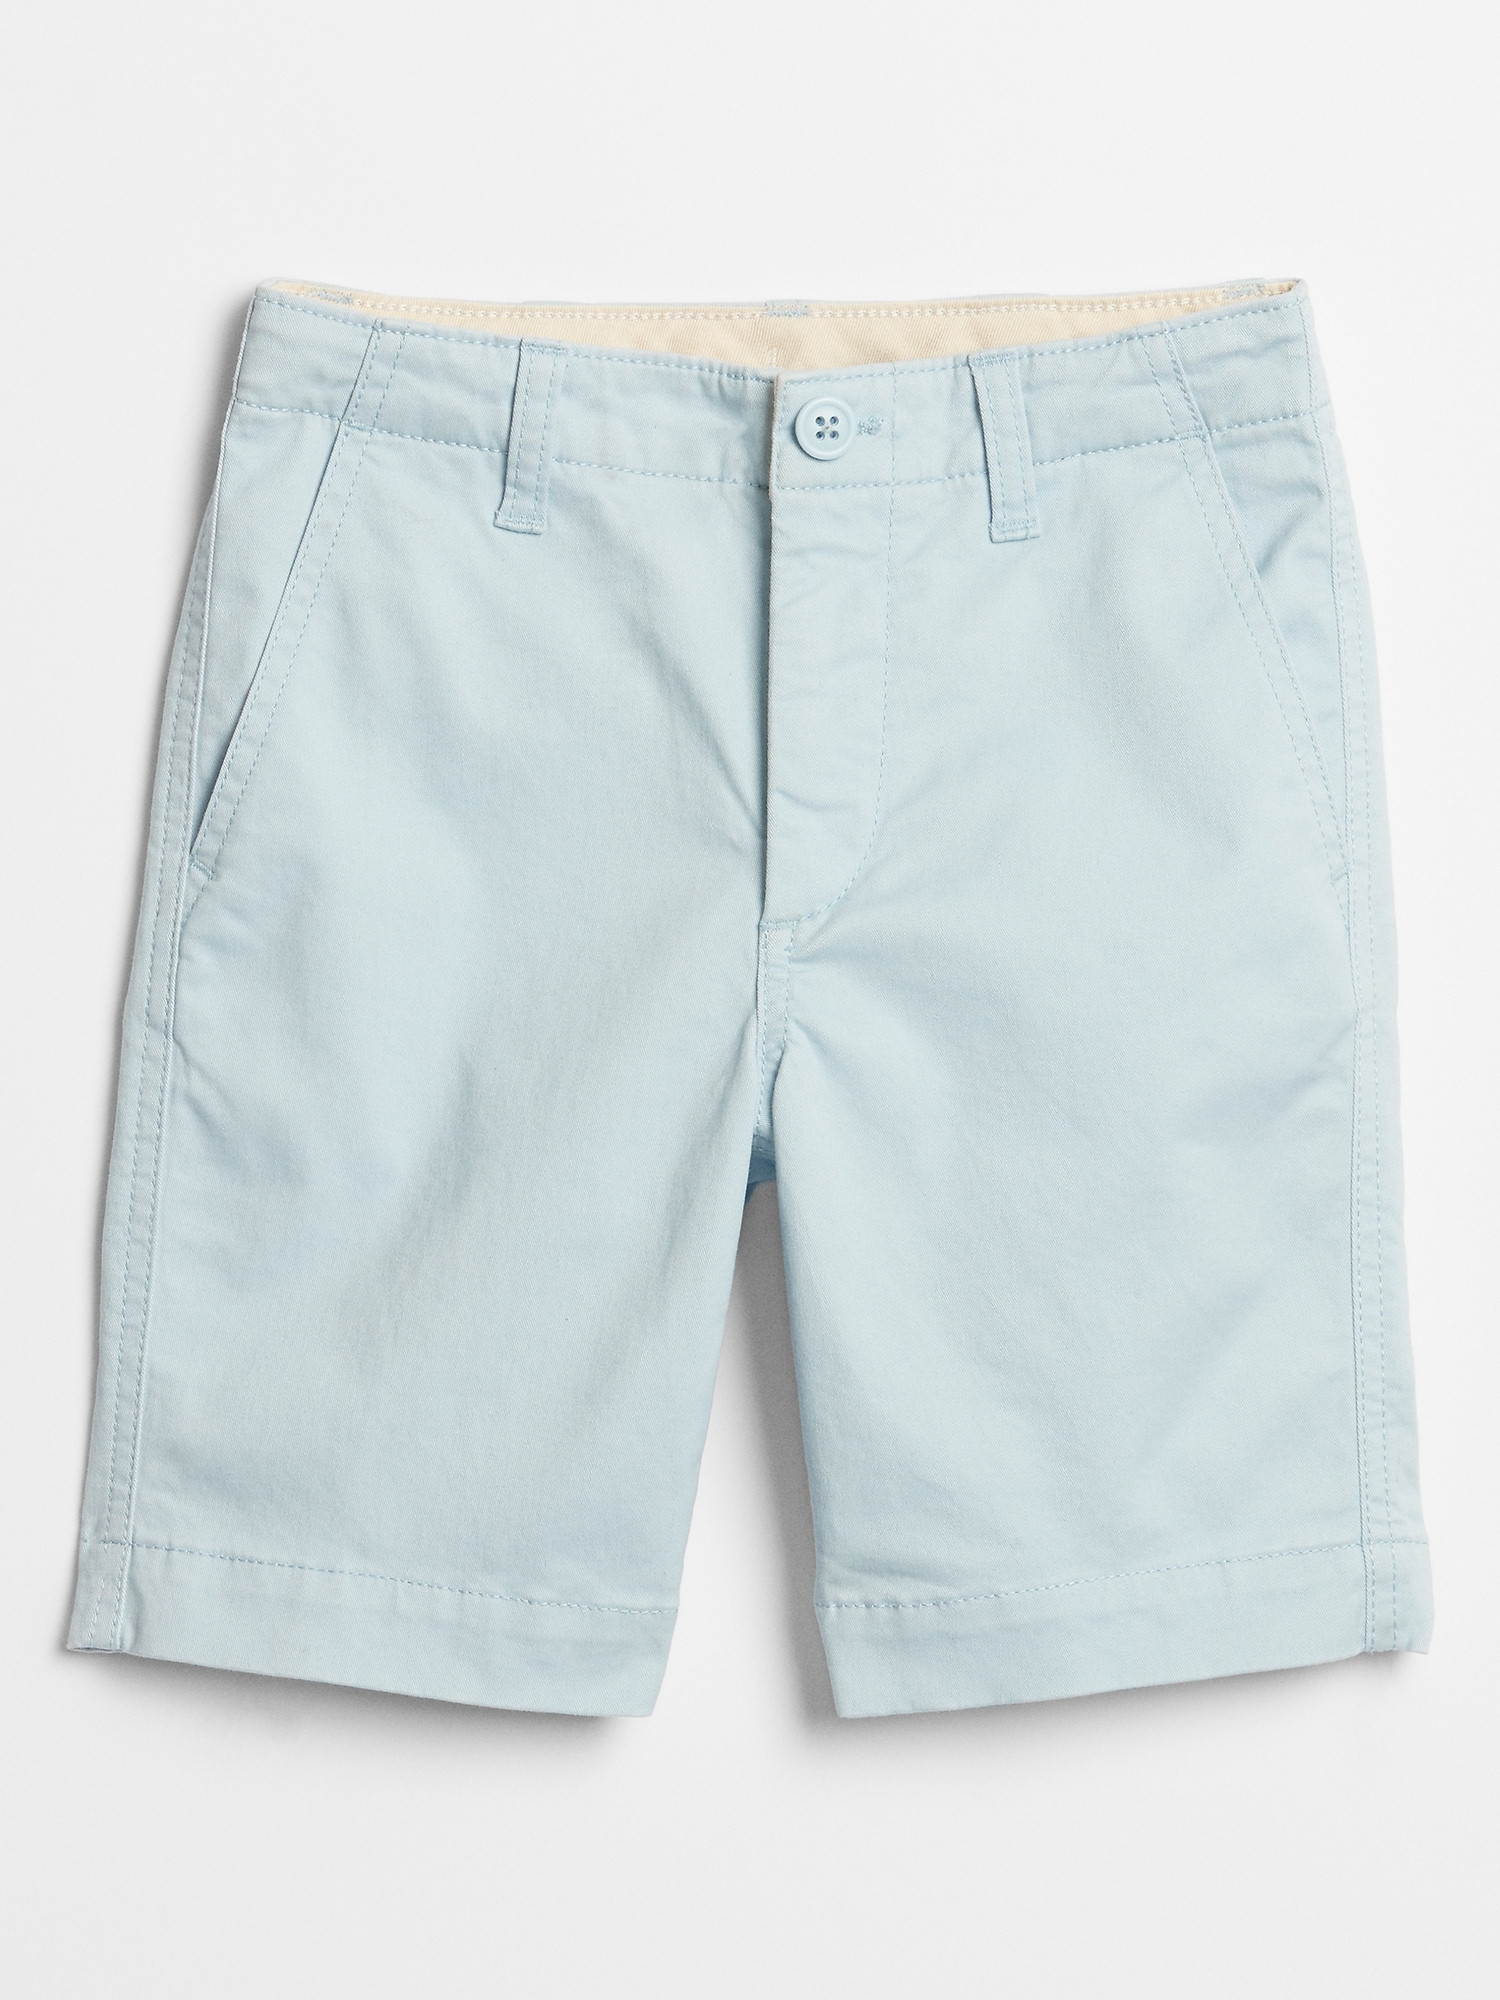 gap factory bermuda shorts